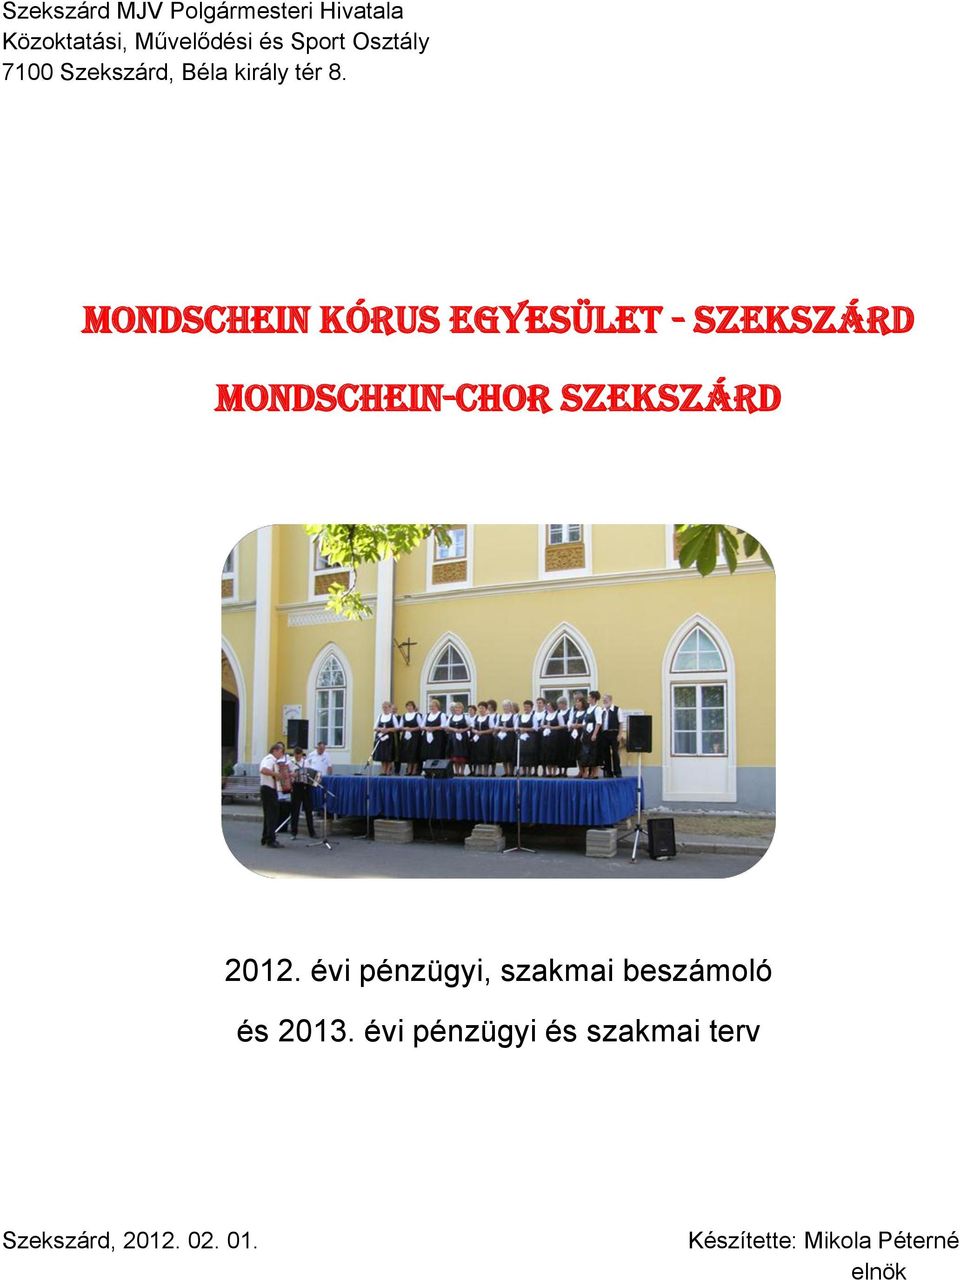 Mondschein Kórus Egyesület - Szekszárd Mondschein-chor Szekszárd 2012.